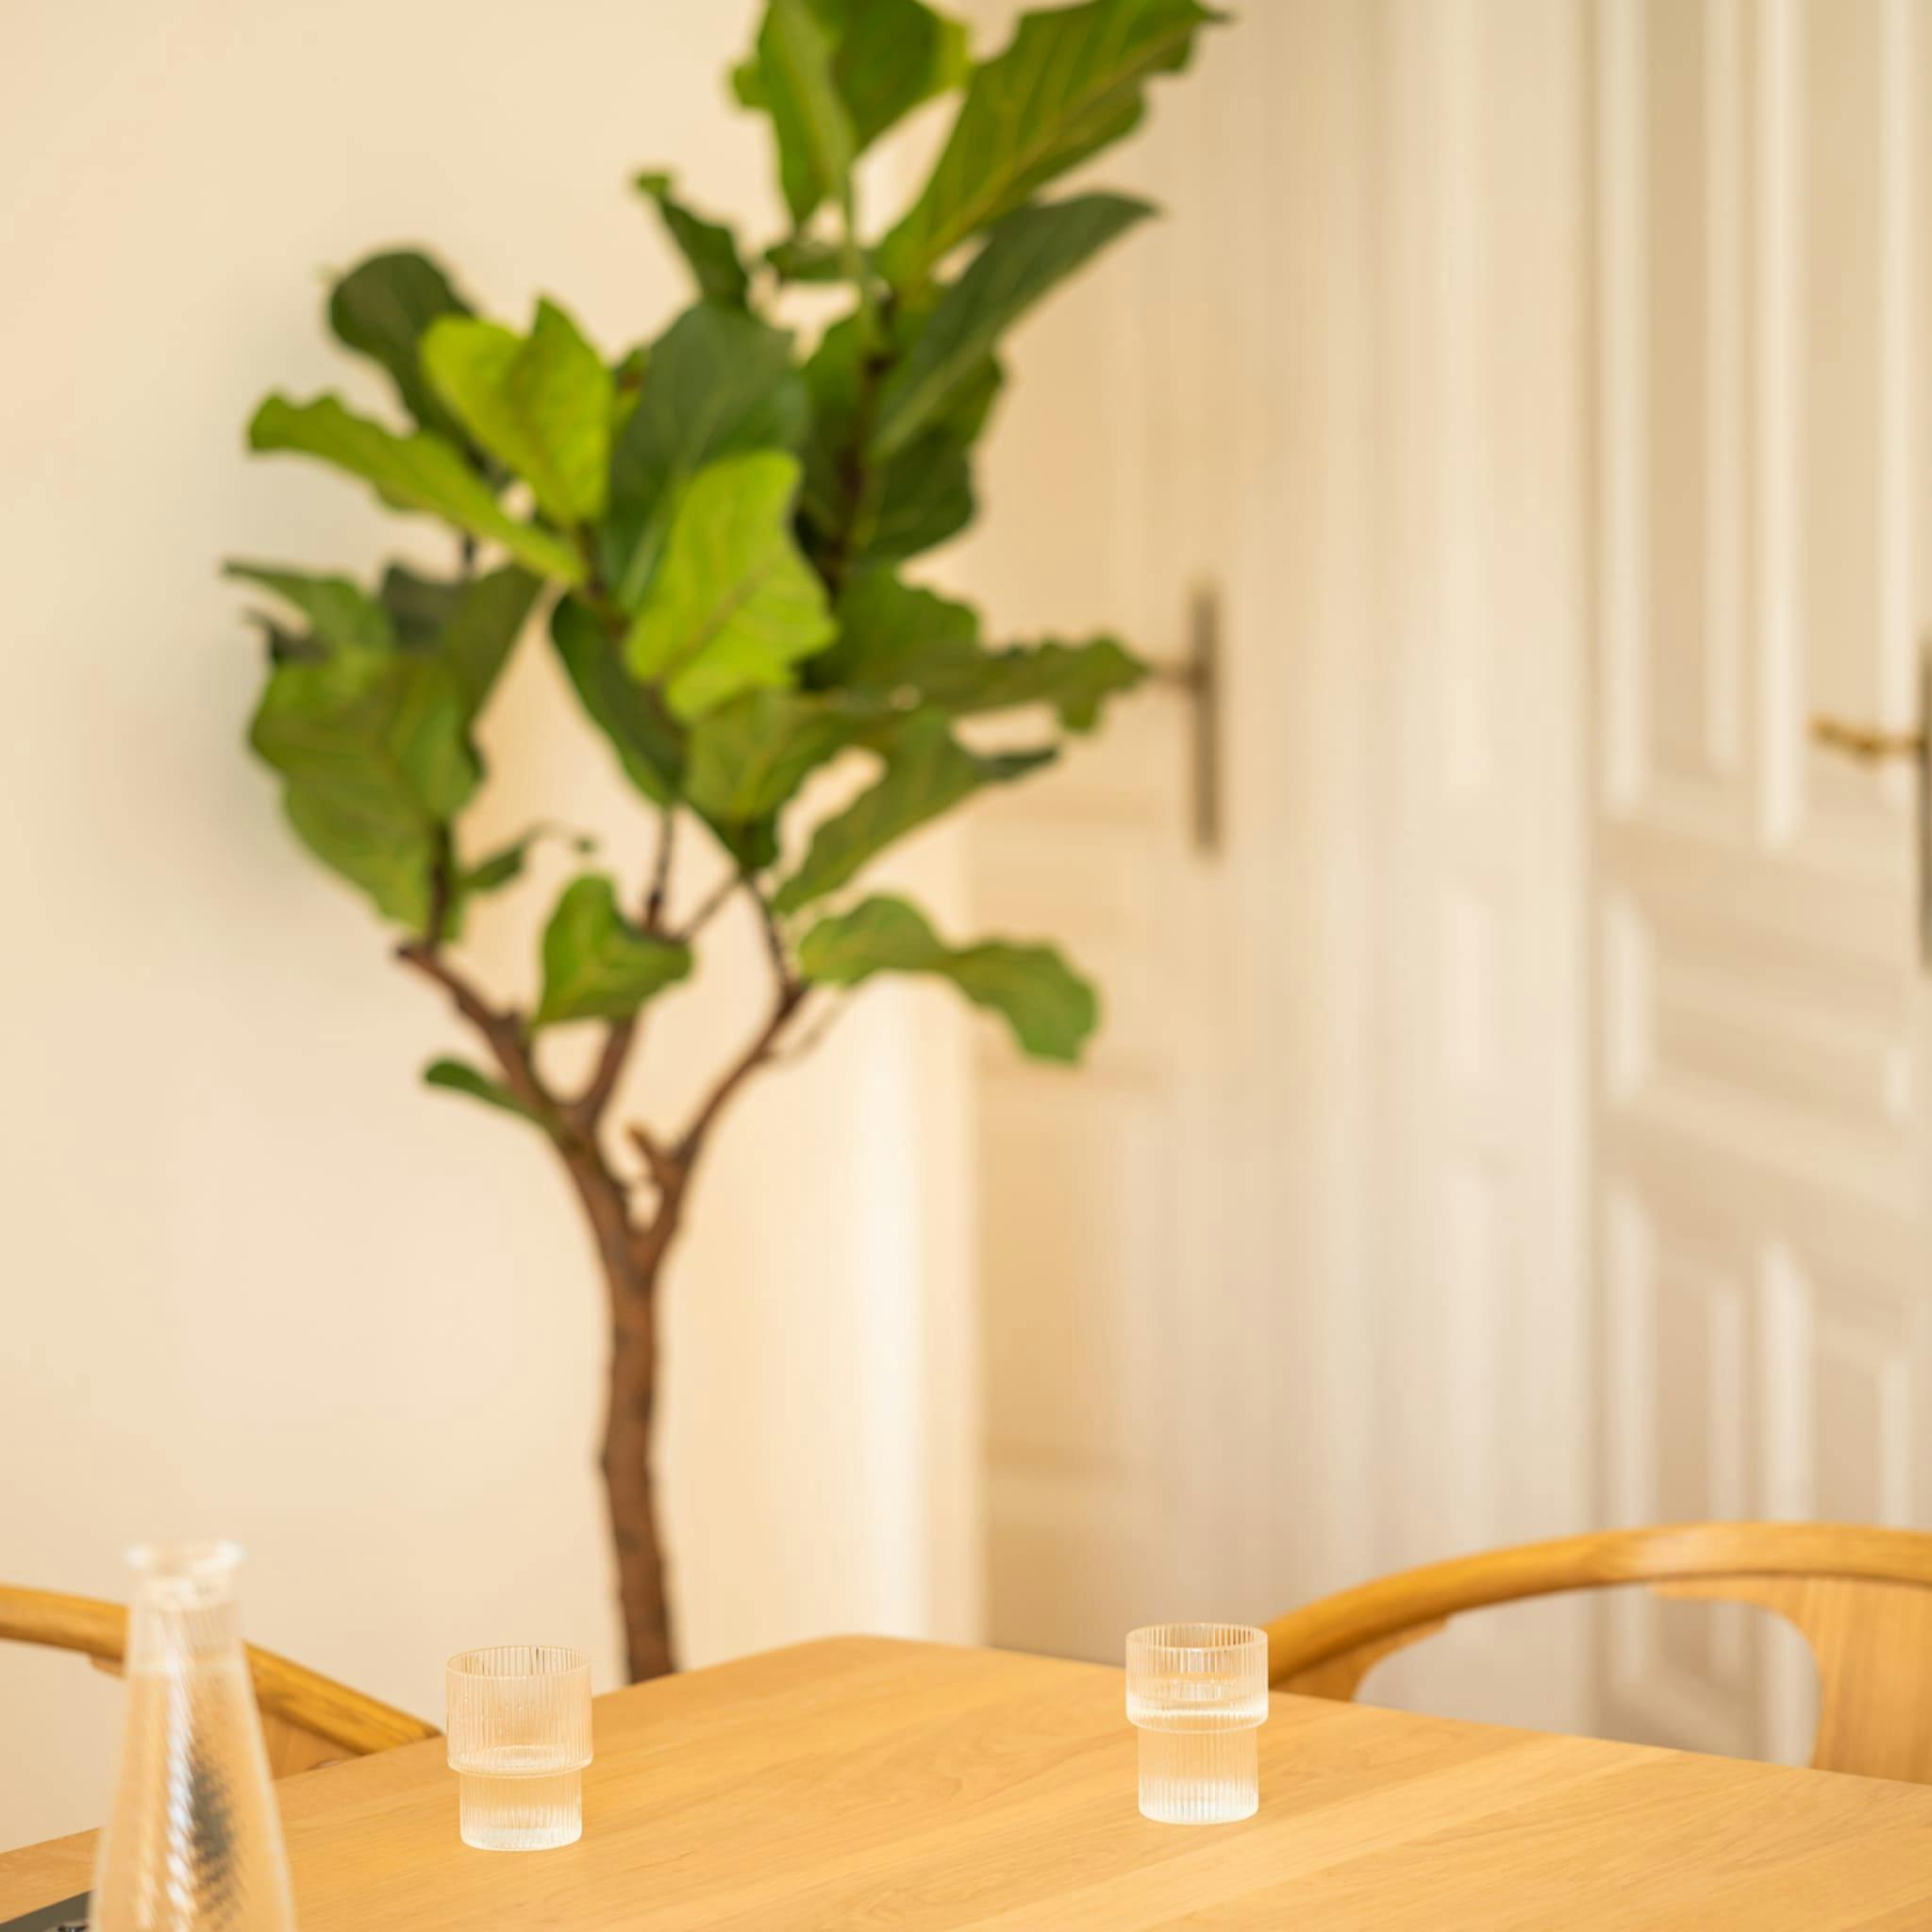 Holztisch mit zwei Gläsern und einer Karaffe sowie einer Topfpflanze im Hintergrund, in der in Wien ansässigen Digitalagentur Functn.